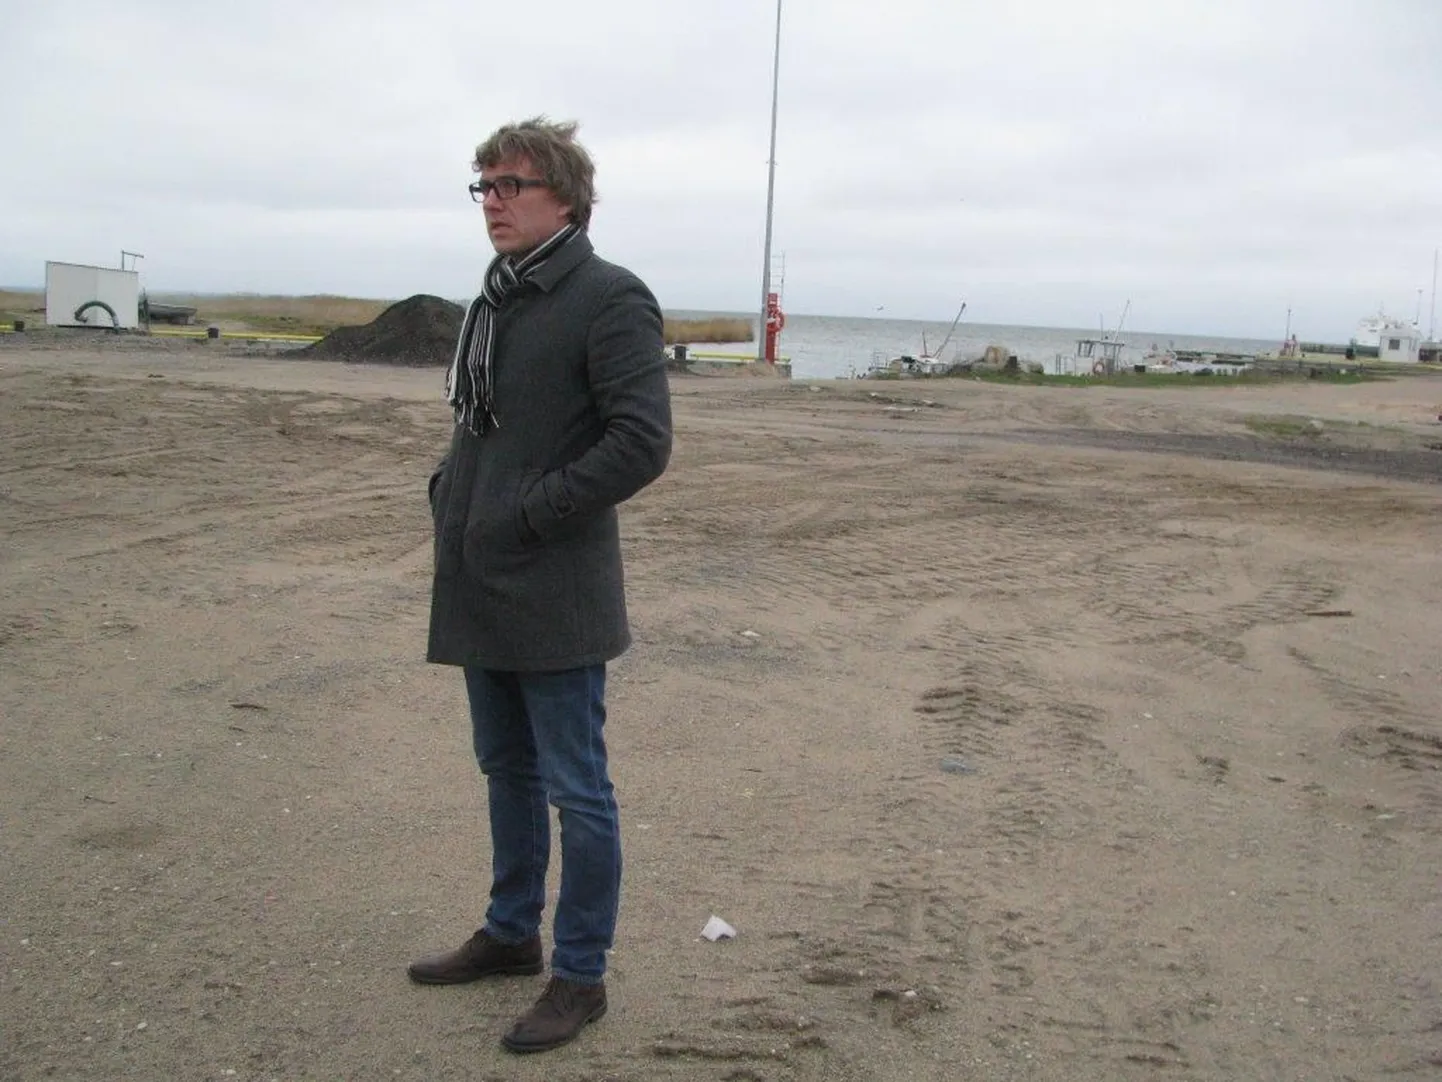 Kihnu vallavanem Ingvar Saare näitas Suaru sadamas tulevase merepäästepunkti ja kavandava päästehoone asukohta.